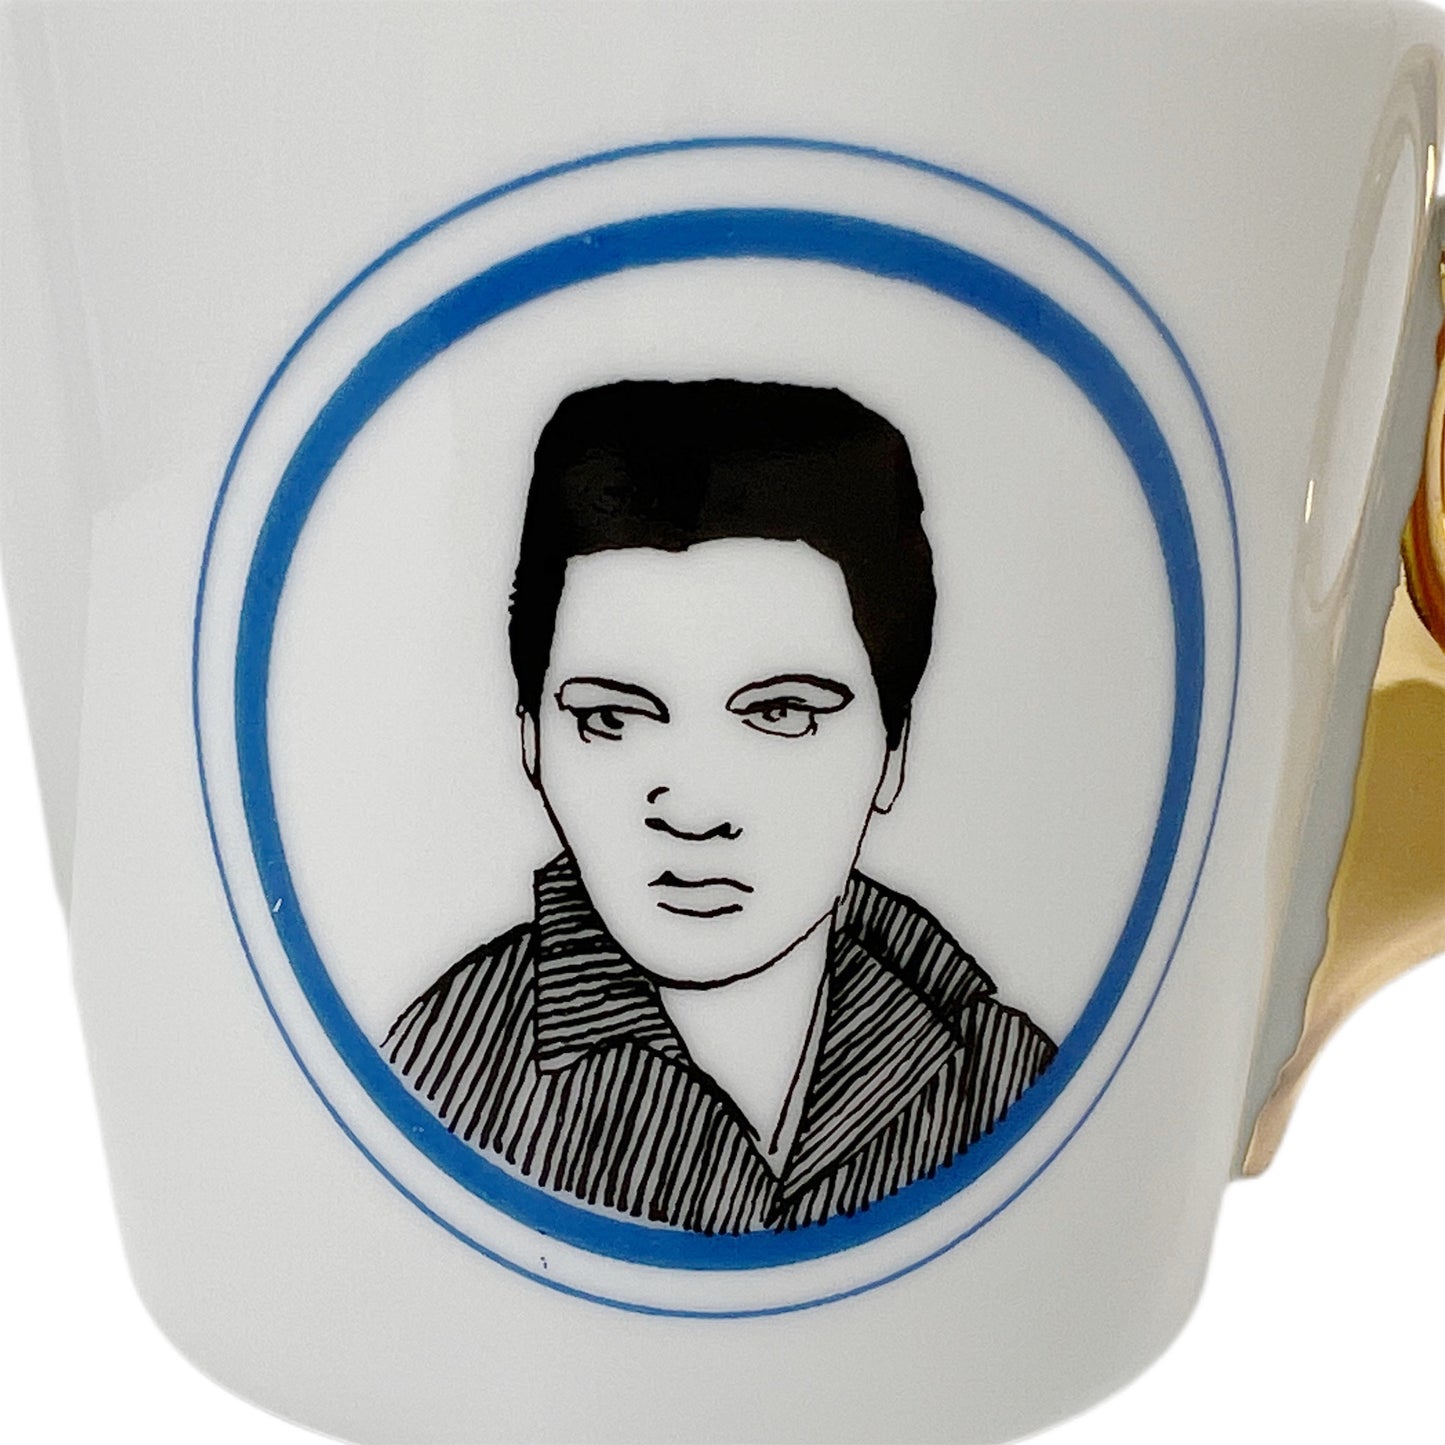 【Kuhn Keramik】 ポートレートマグカップ Elvis Presley